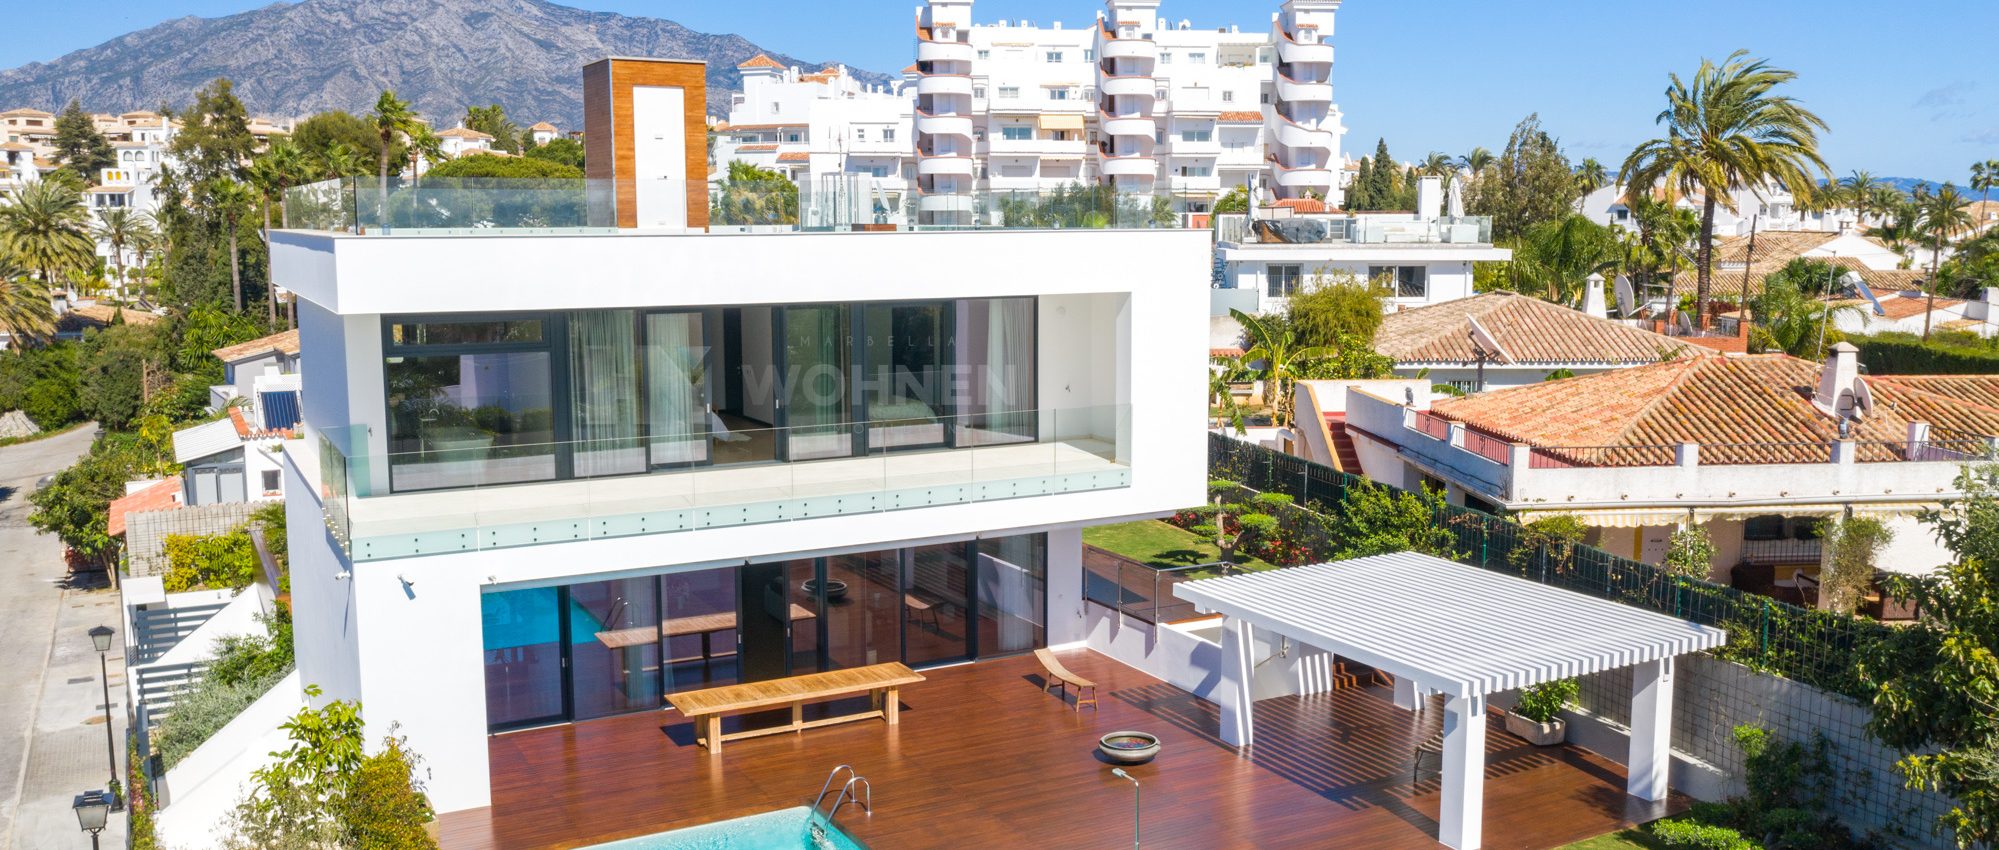 Impressive new built quality villa walking distance to Puerto Banus Marbella